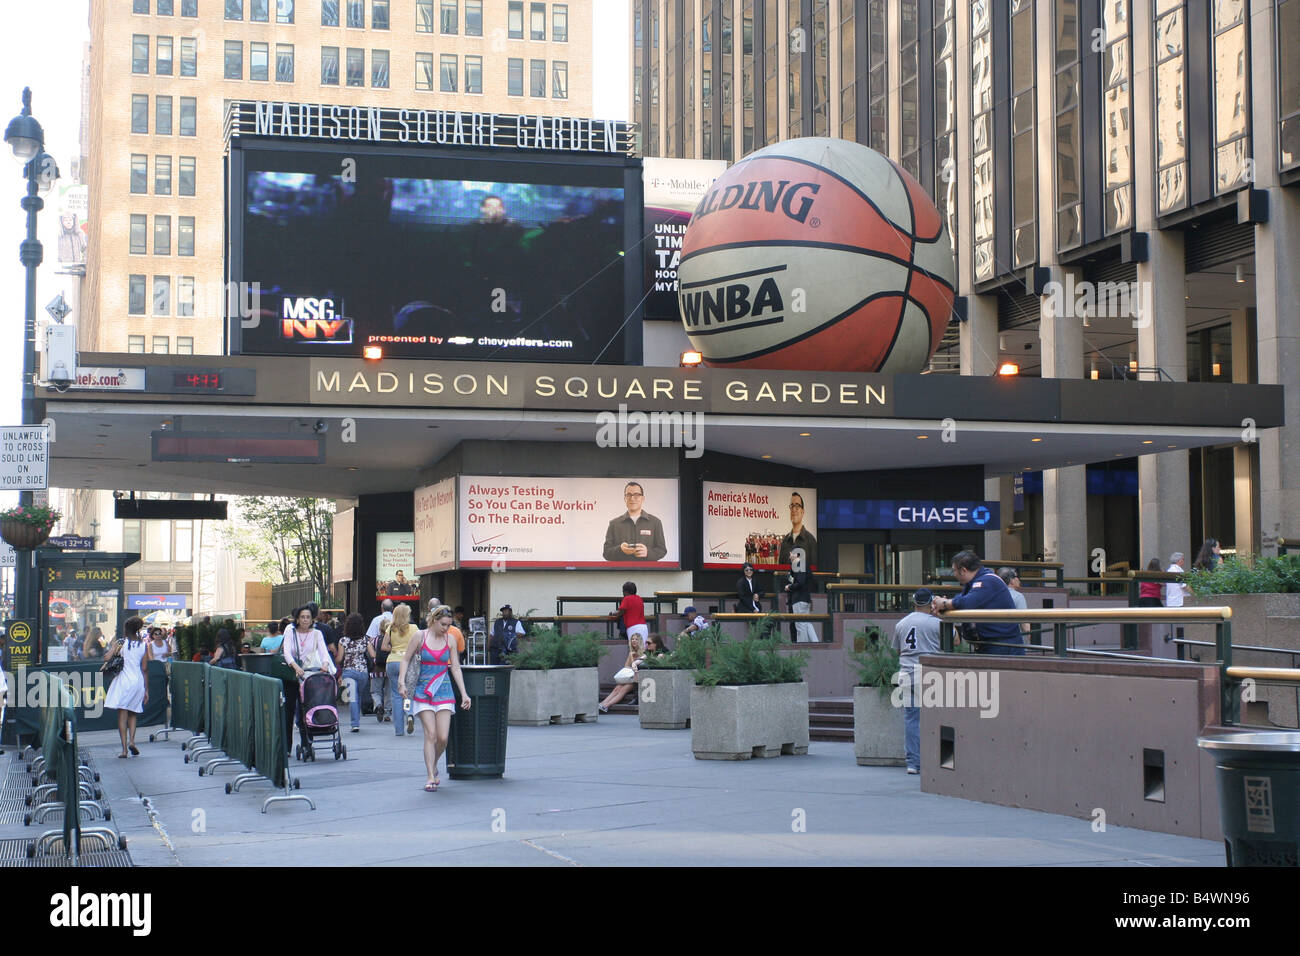 Madison Square Garden, entrée principale de l'arène de sport sur la 7e avenue, New York, NY. Banque D'Images